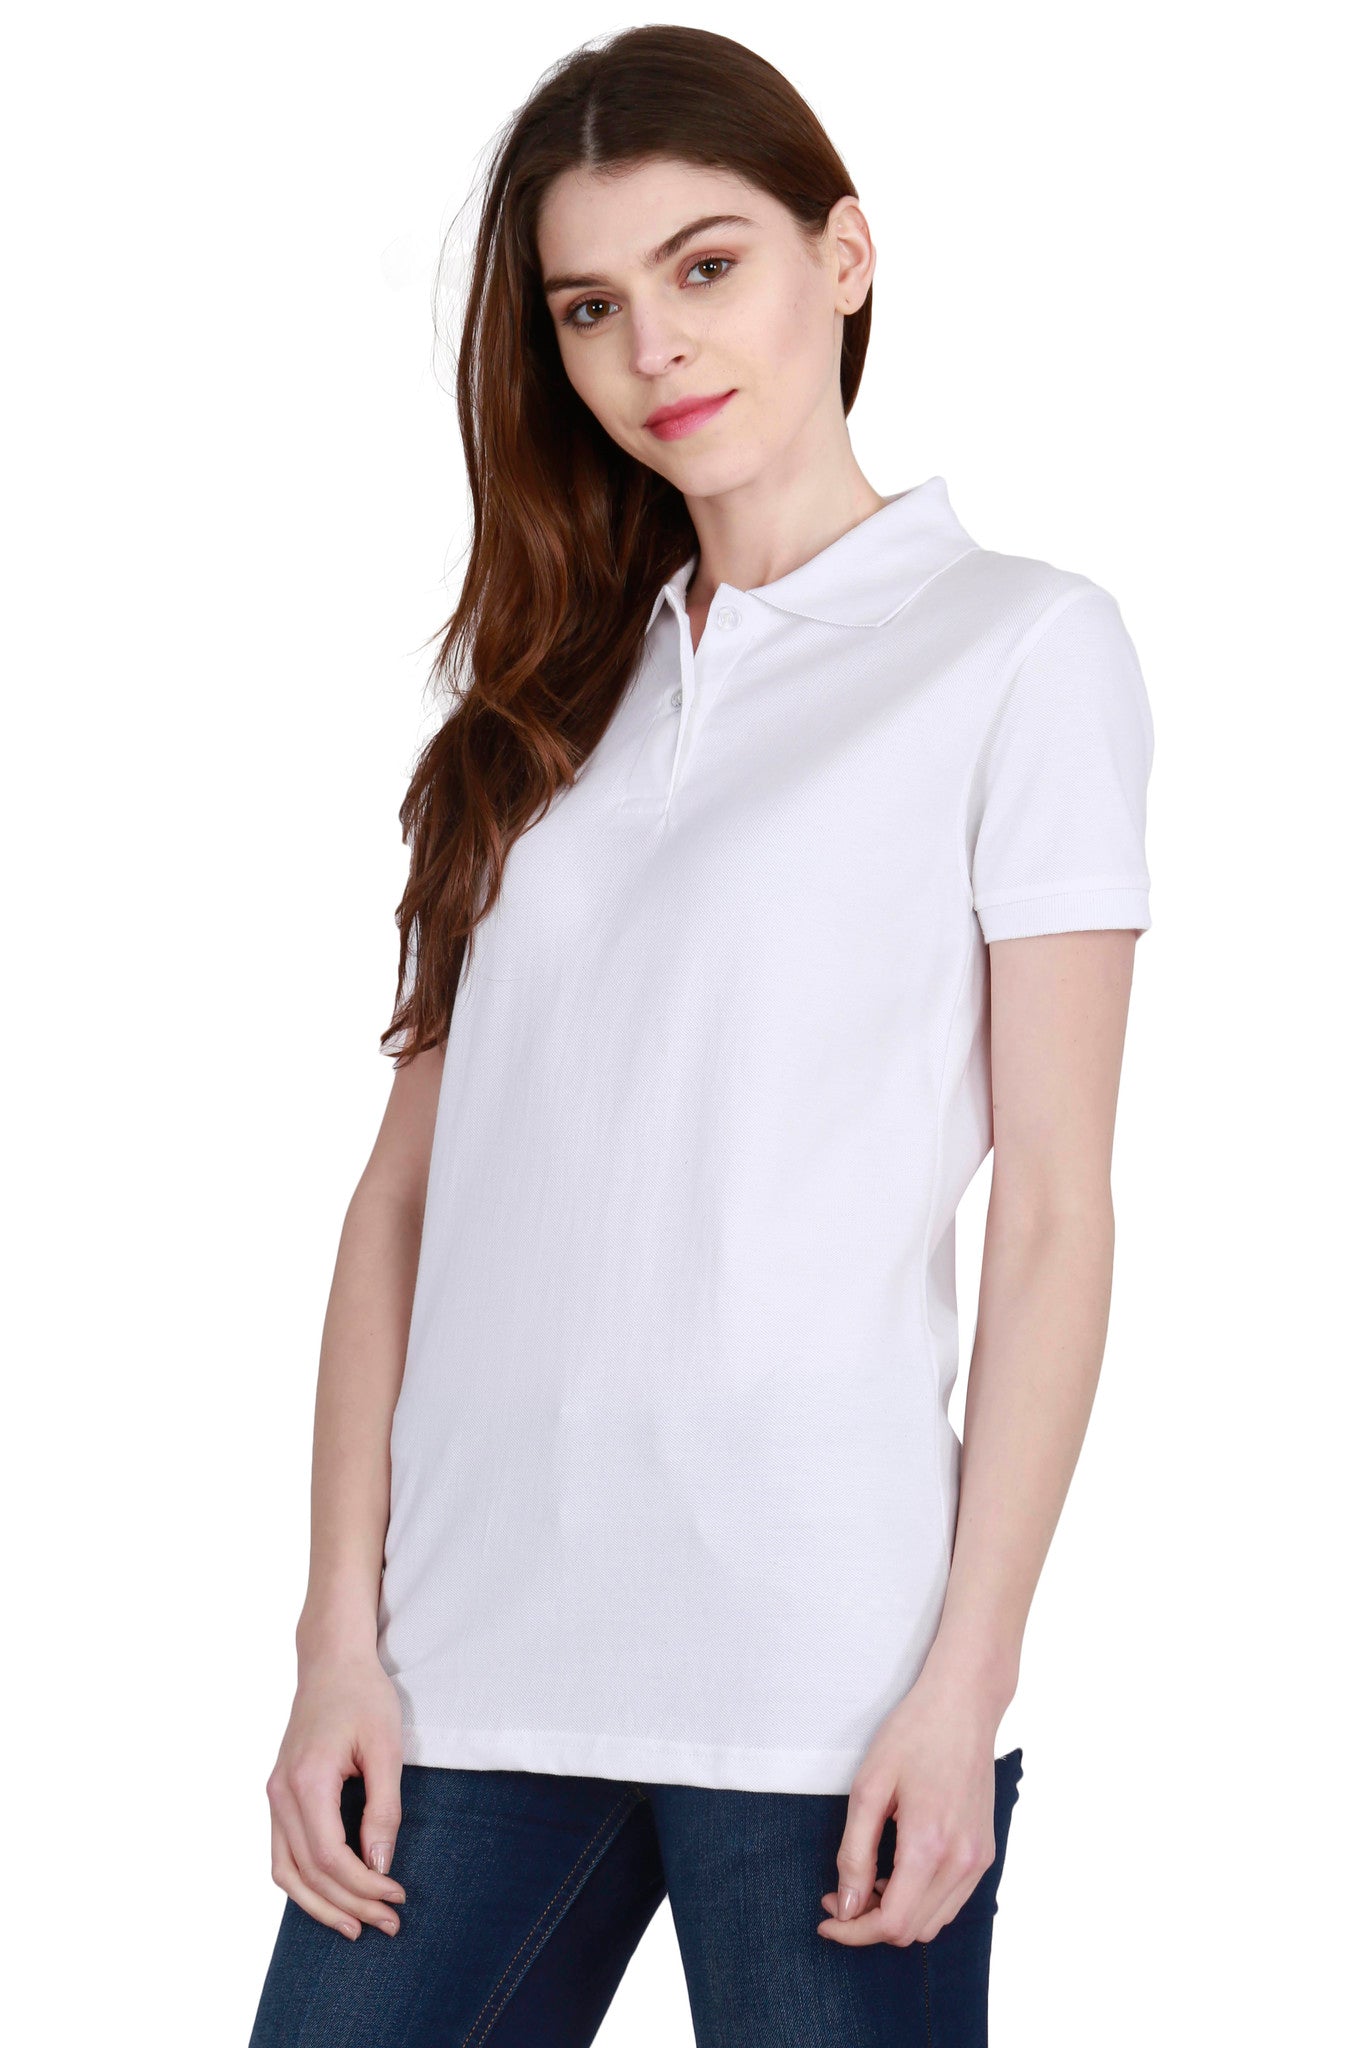 Women's Cotton Plain Polo Neck White Color T-Shirt